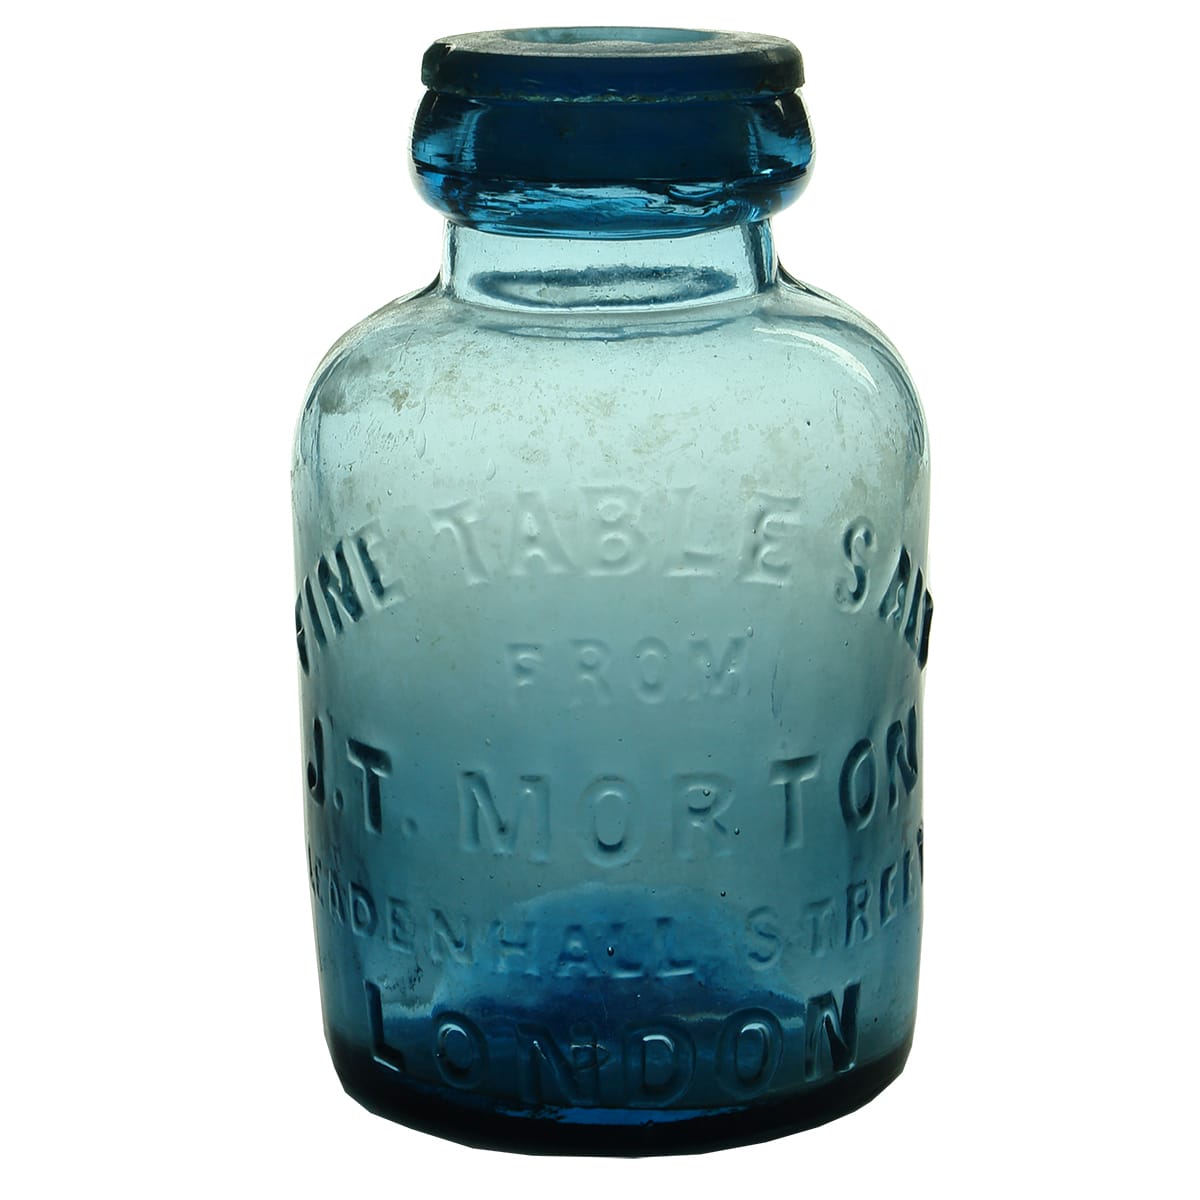 Salt Jar. J. T. Morton, London. Pale Blue. 2 Pound.